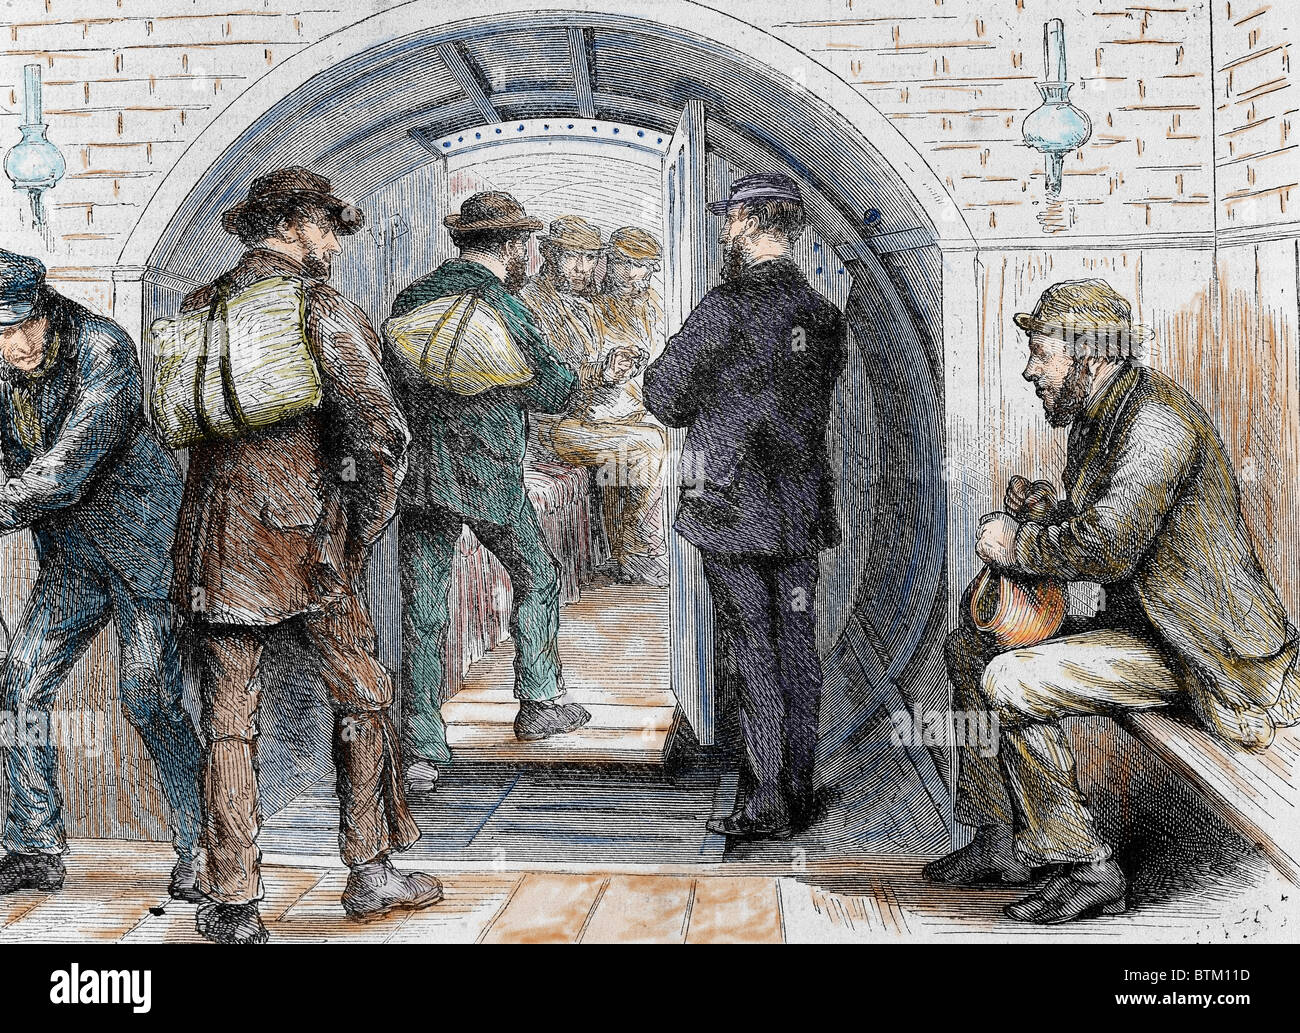 Tunnel à Londres. La présence de travailleurs étrangers à leur emploi. Gravure couleur dans 'l'Illustration' espagnole et américaine, 1870. Banque D'Images